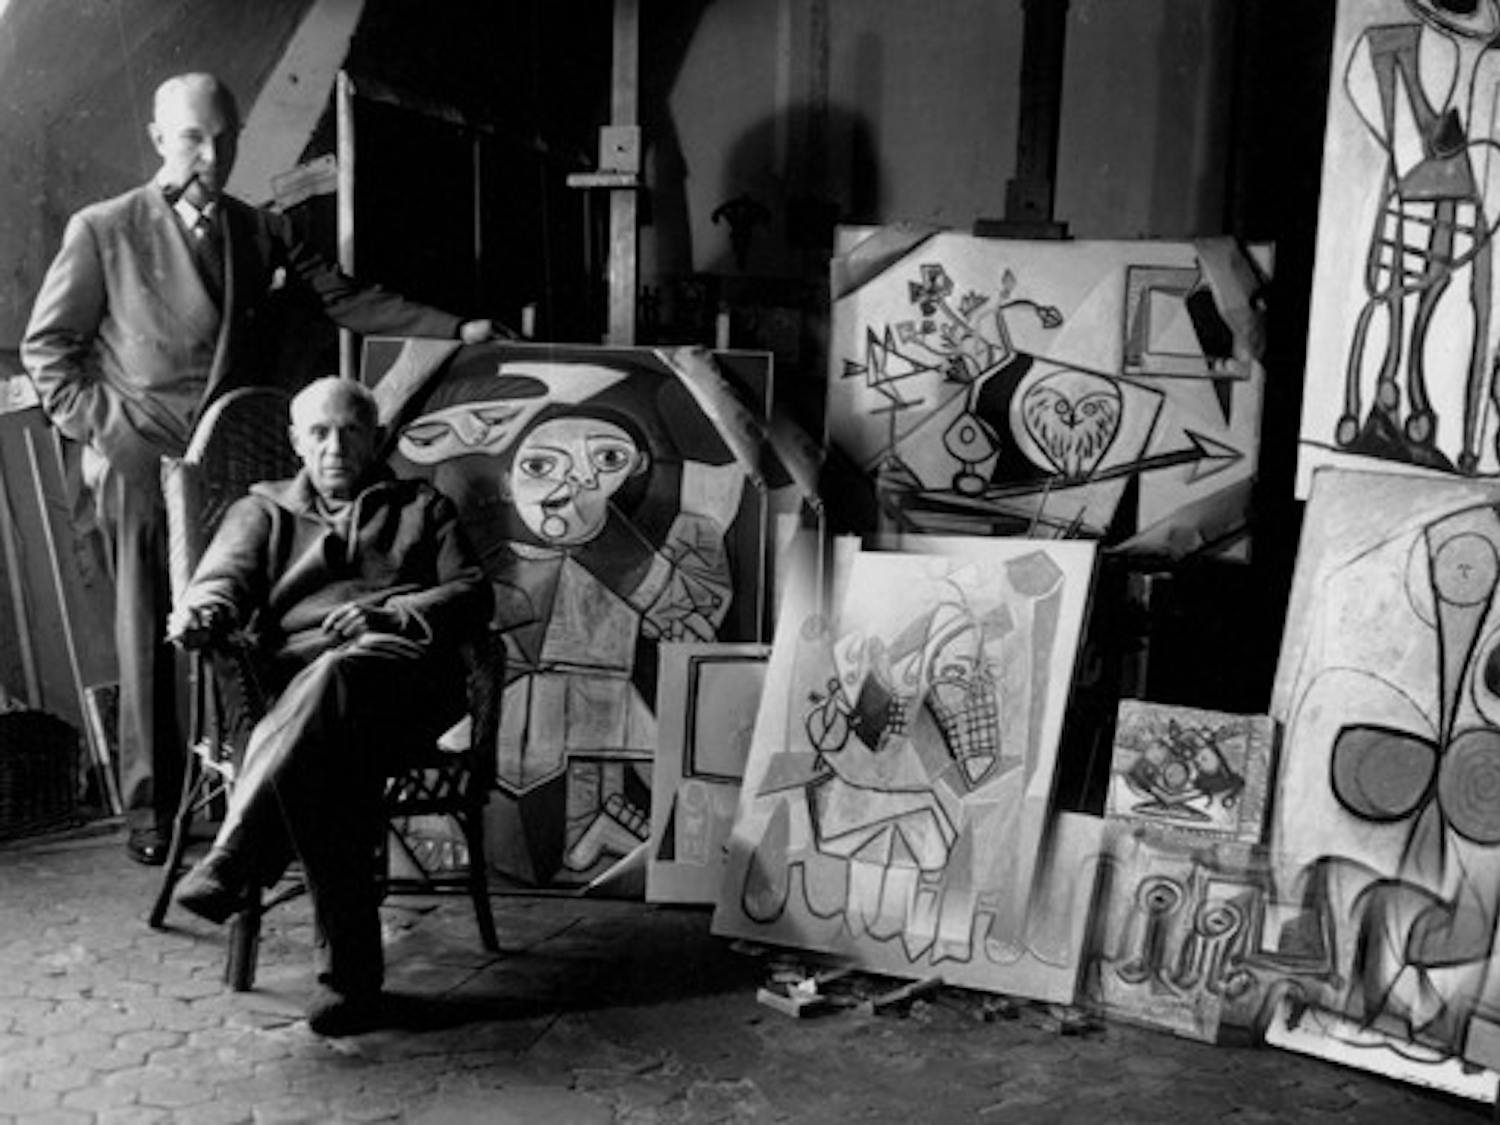 Pablo Picasso et Sam Kootz dans l'atelier de Picasso rue des Grands Augustins a Paris durant l'hiver 1947-1948 --- Pablo Picasso and Sam Kootz in Picasso's workshop located on les Grands Augustins in Paris , winter 1947-1948